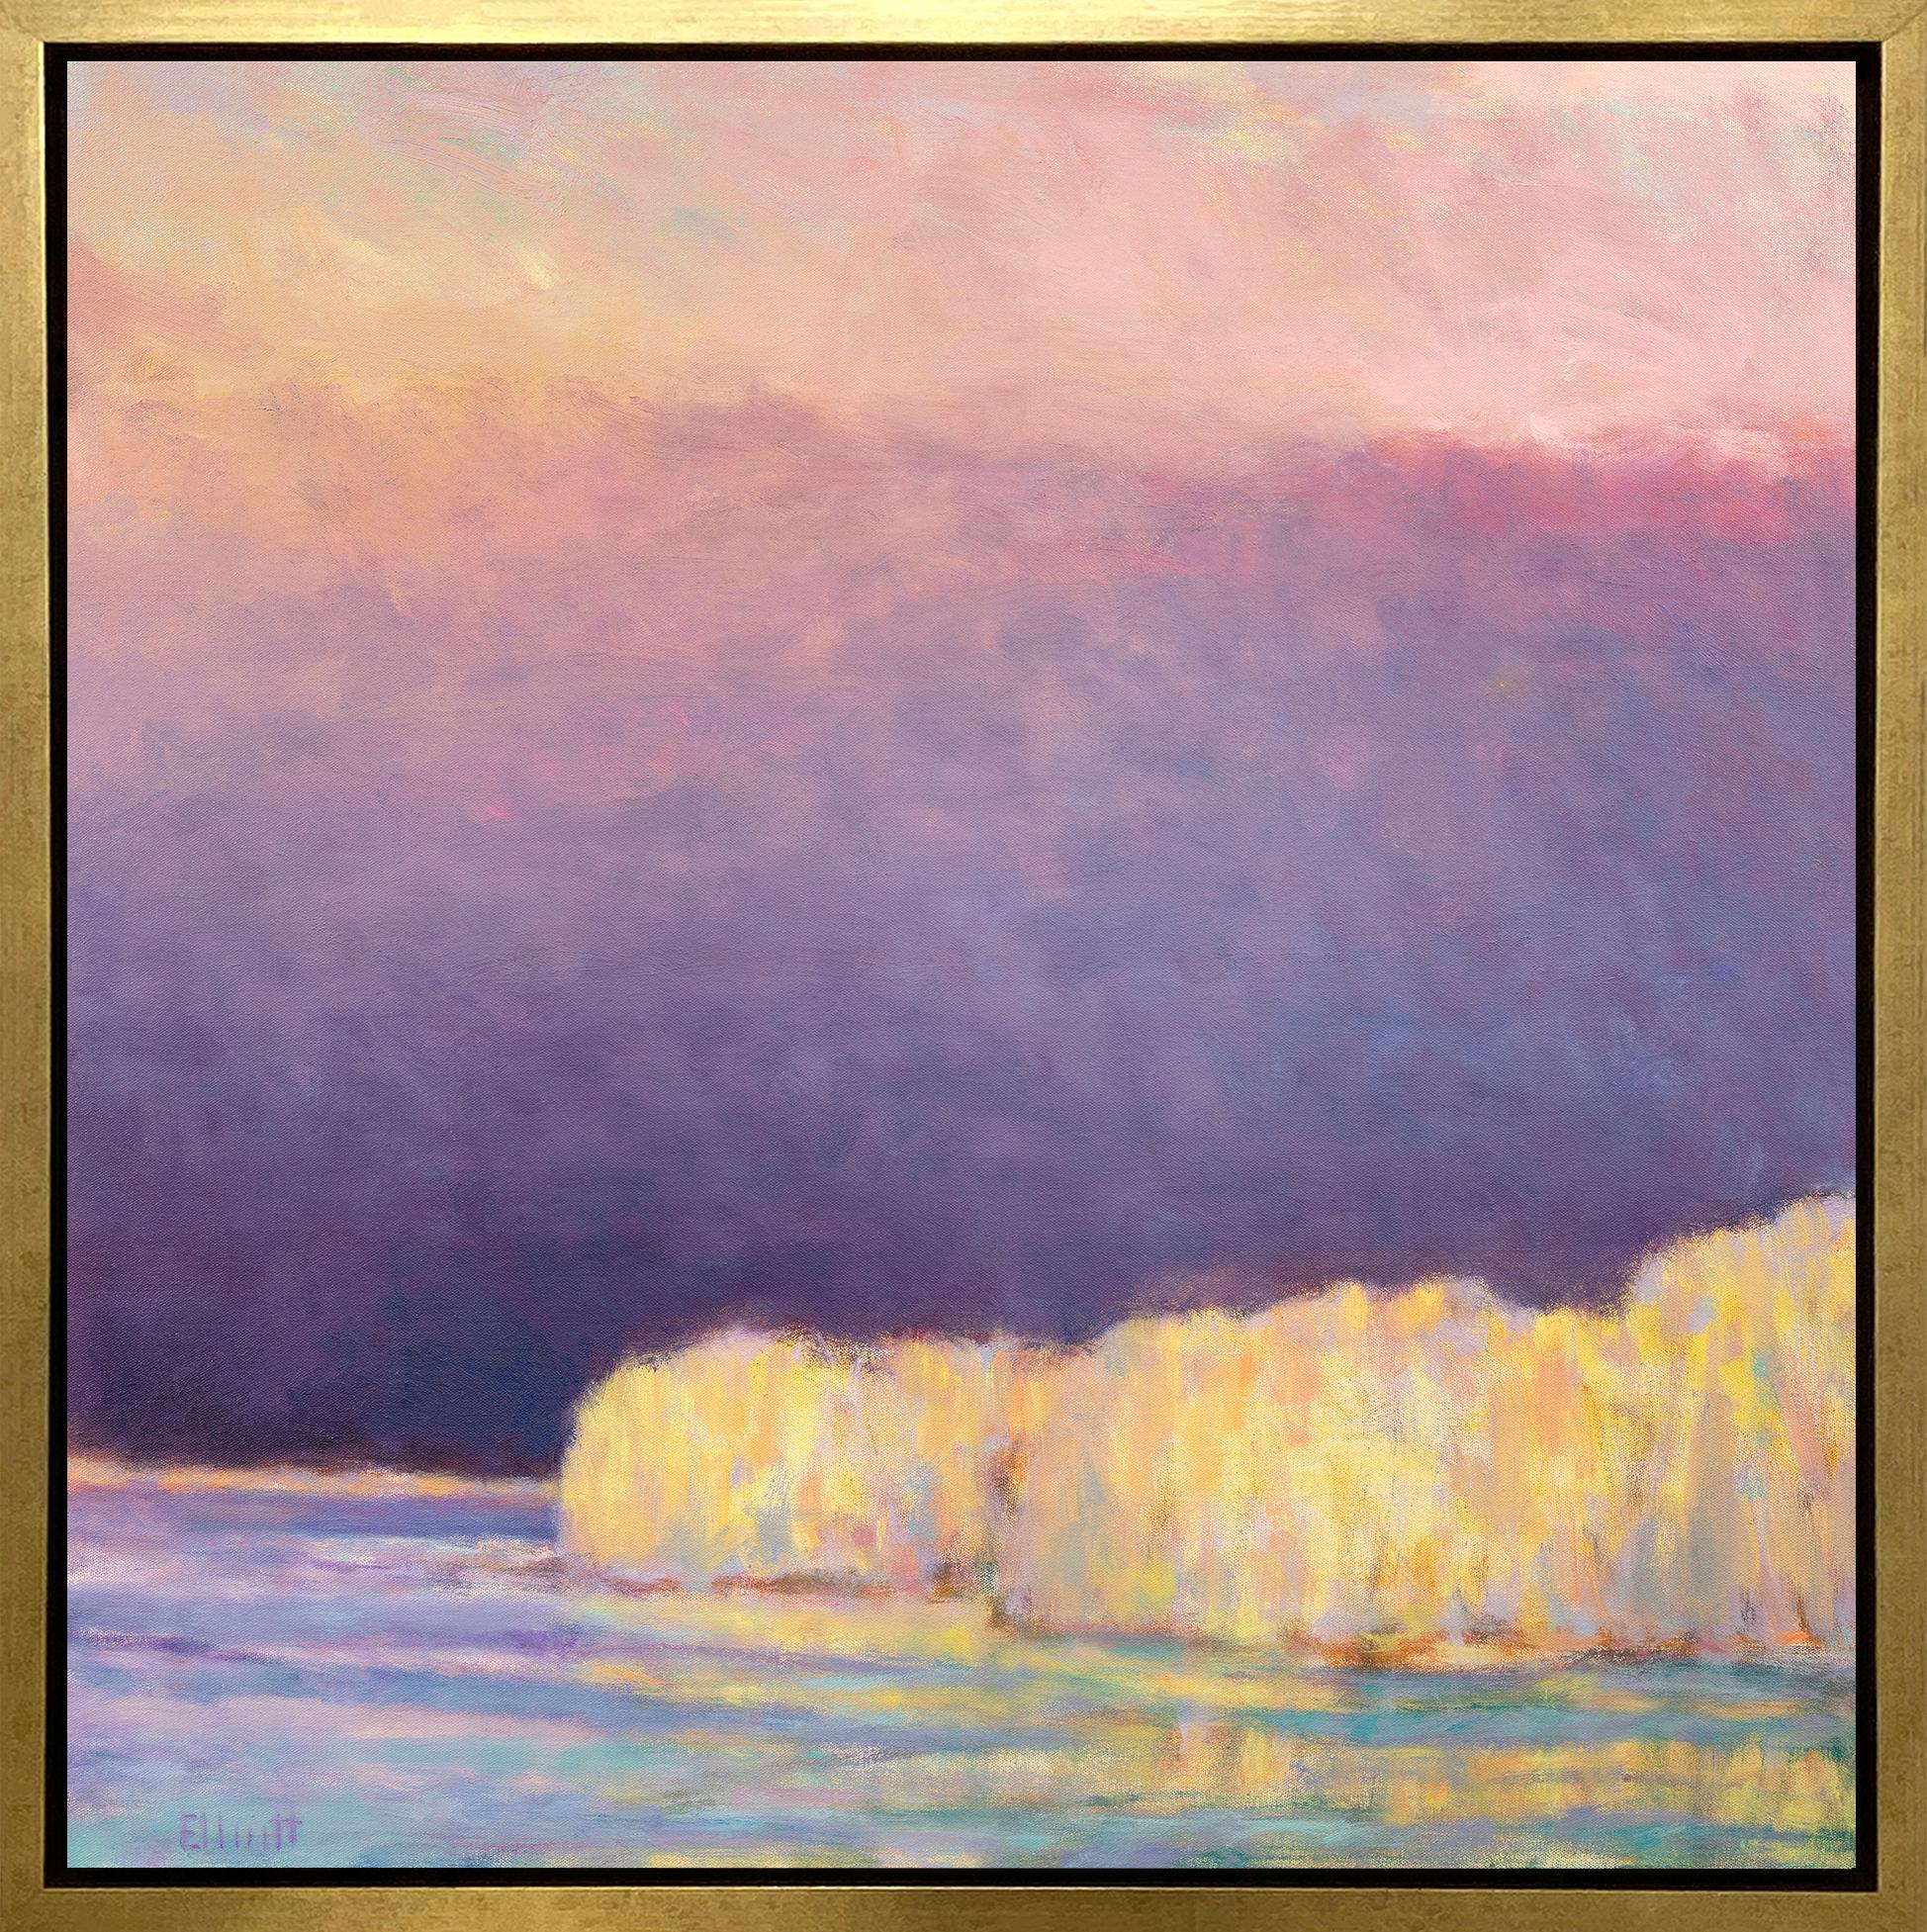 ""Lake Haze - Yellow", gerahmter Giclee-Druck in limitierter Auflage, 76,2 x 76,2 cm